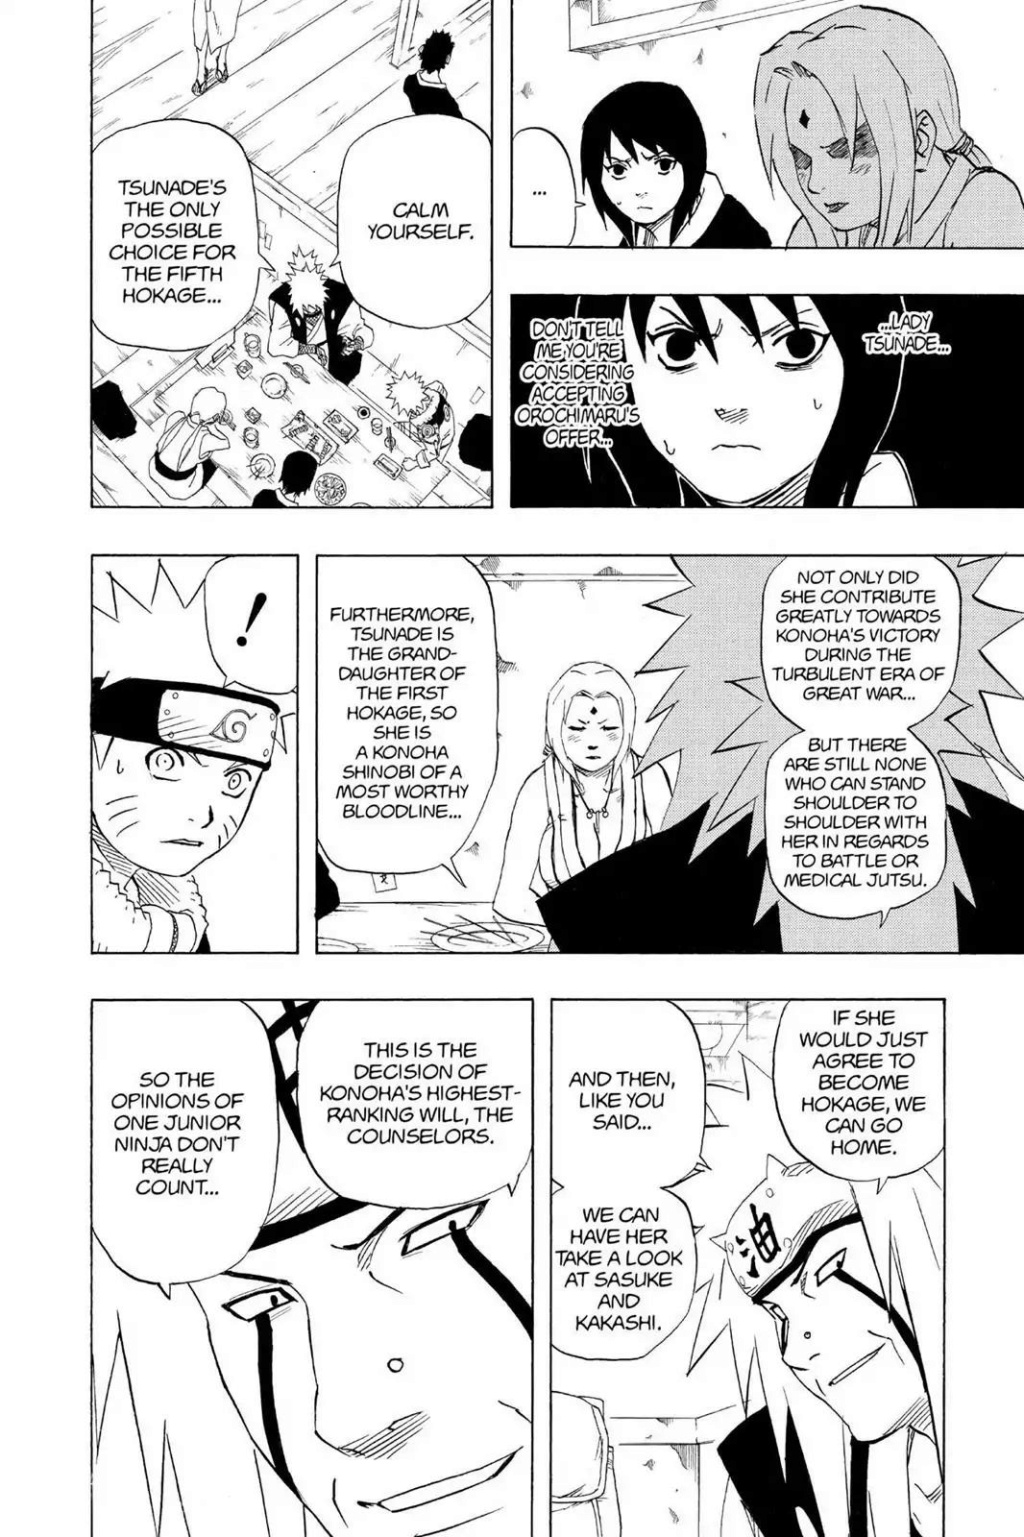 Naruto SM e Tobirama  vs Tsunade e Minato - Página 2 04_27915